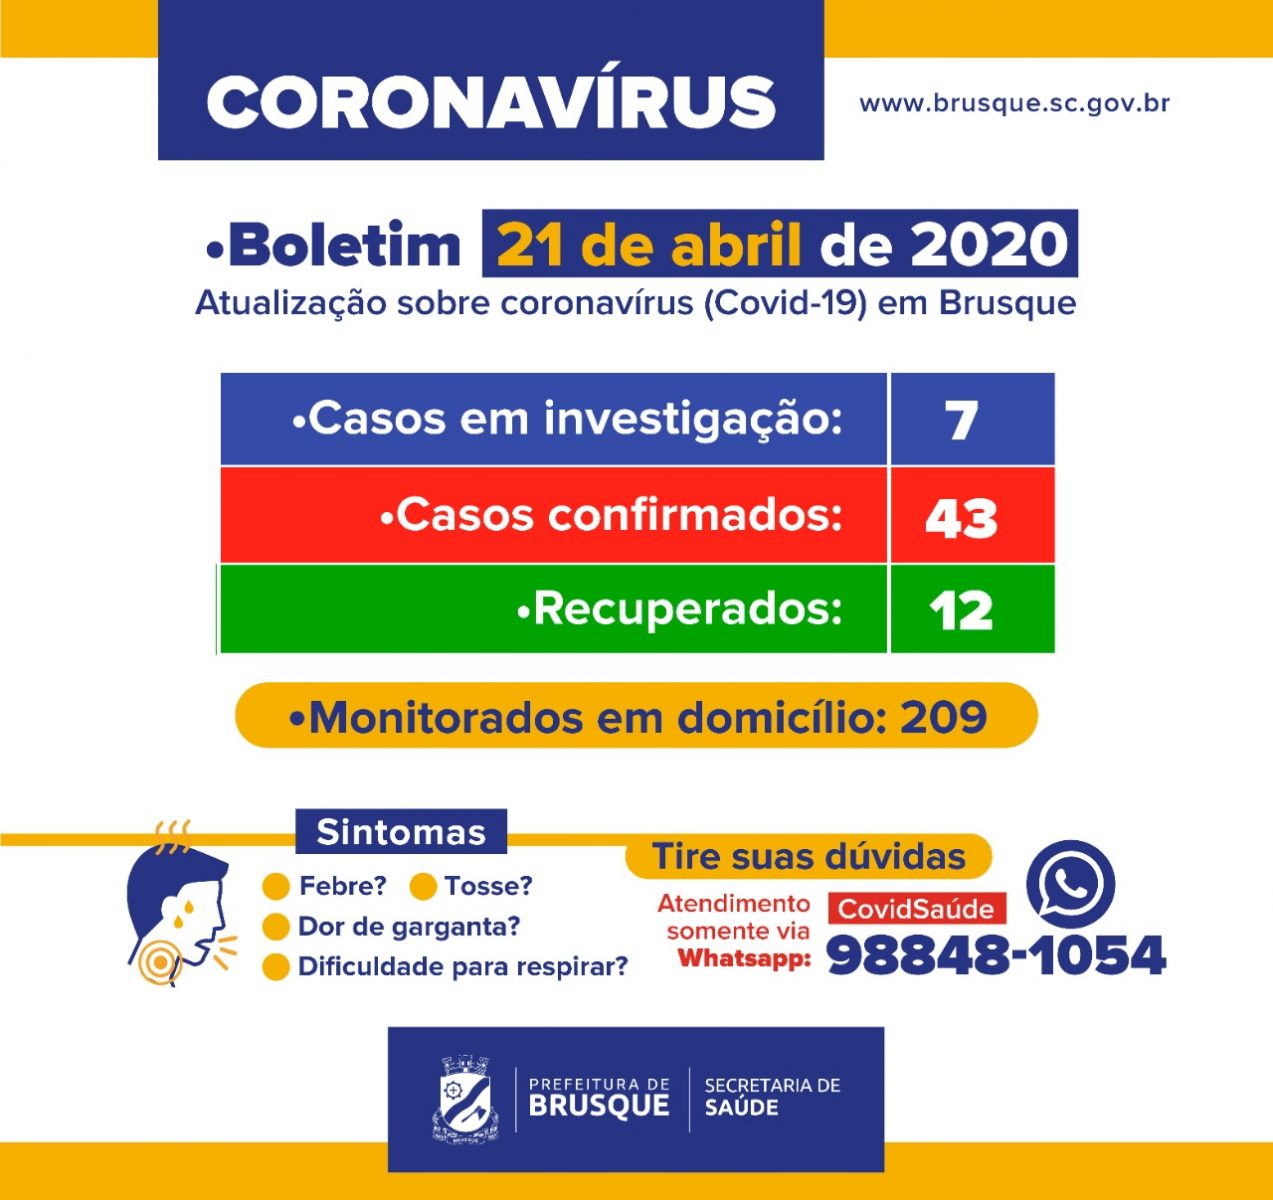 43 casos confirmados de coronavírus em Brusque